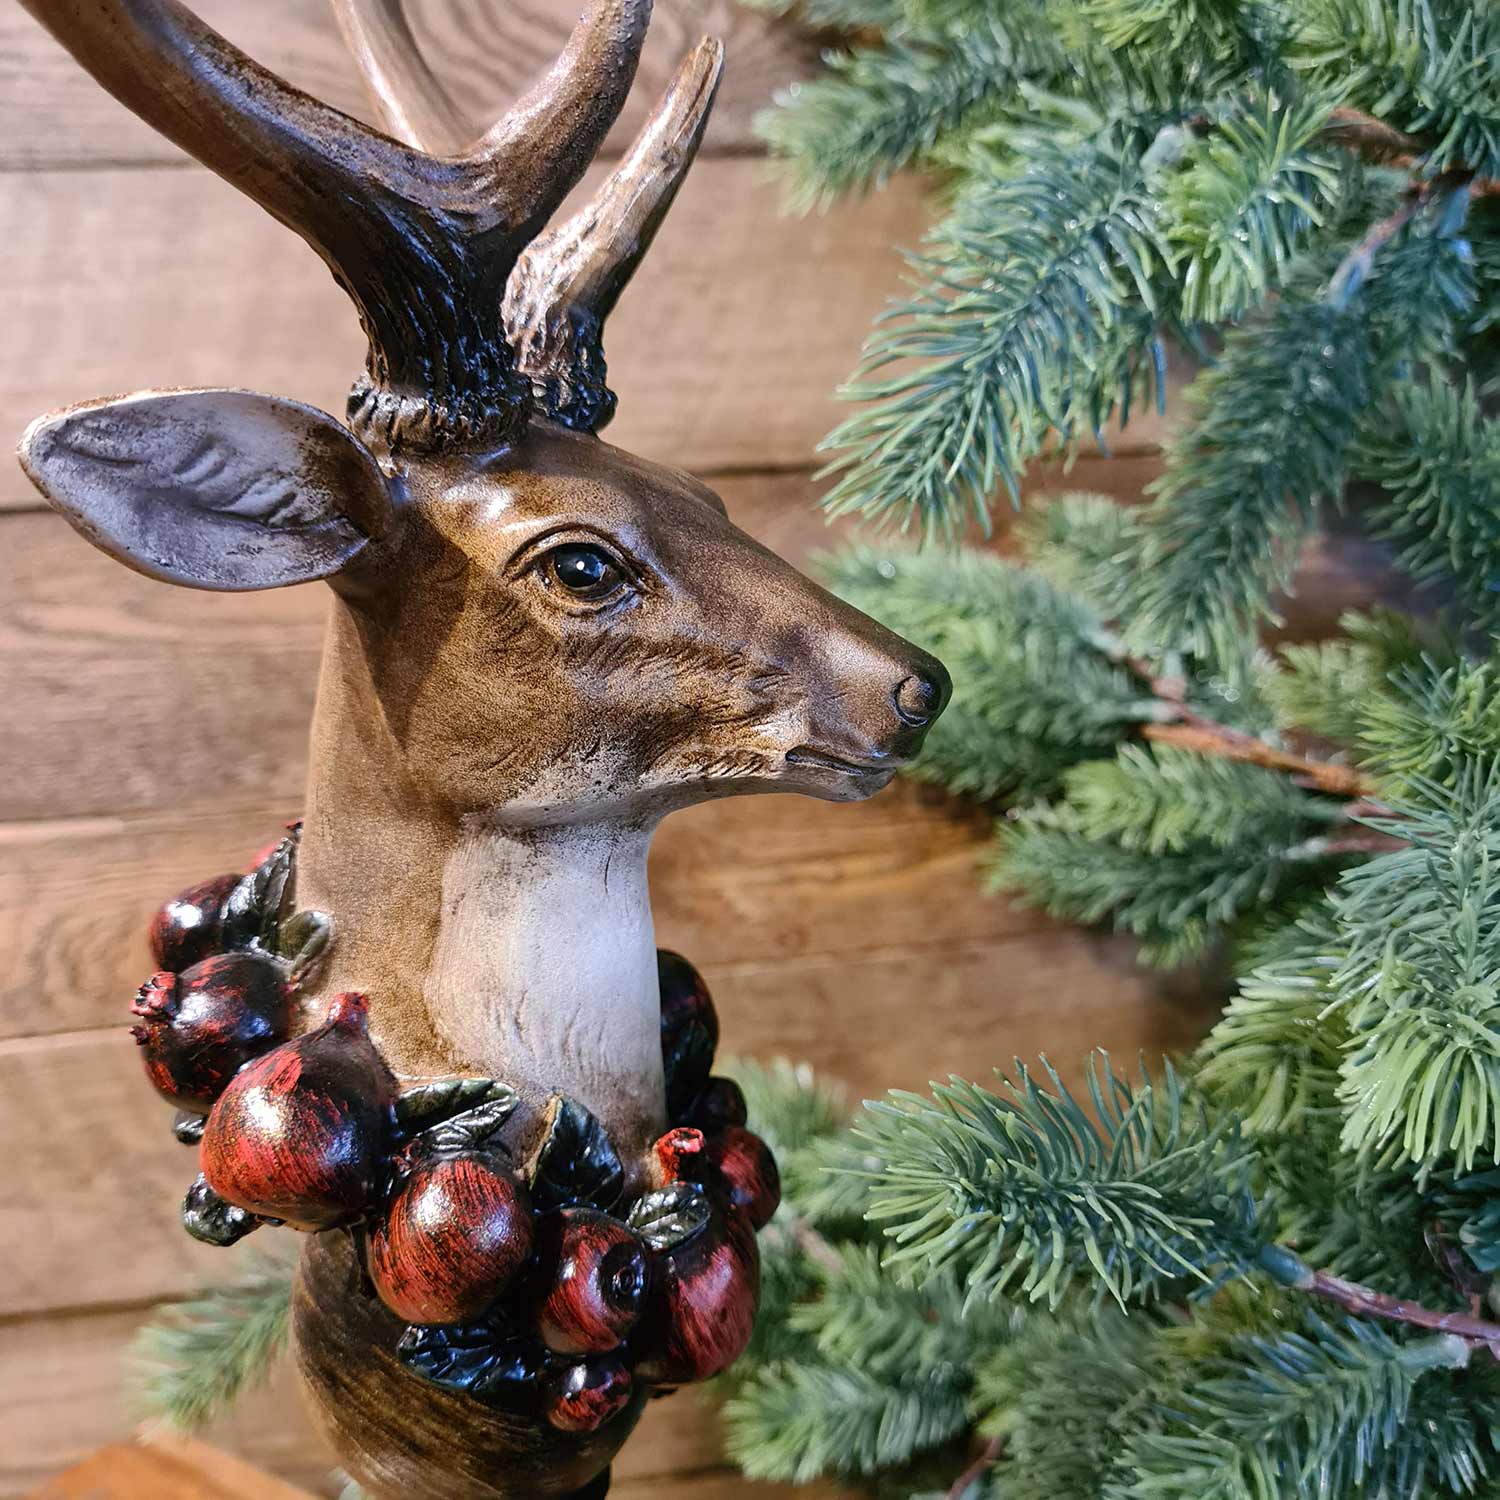 Vintage stílus, csipkebogyó koszorúval díszített, dekoratív karácsonyi szarvas mellszobor, fenyőfával.